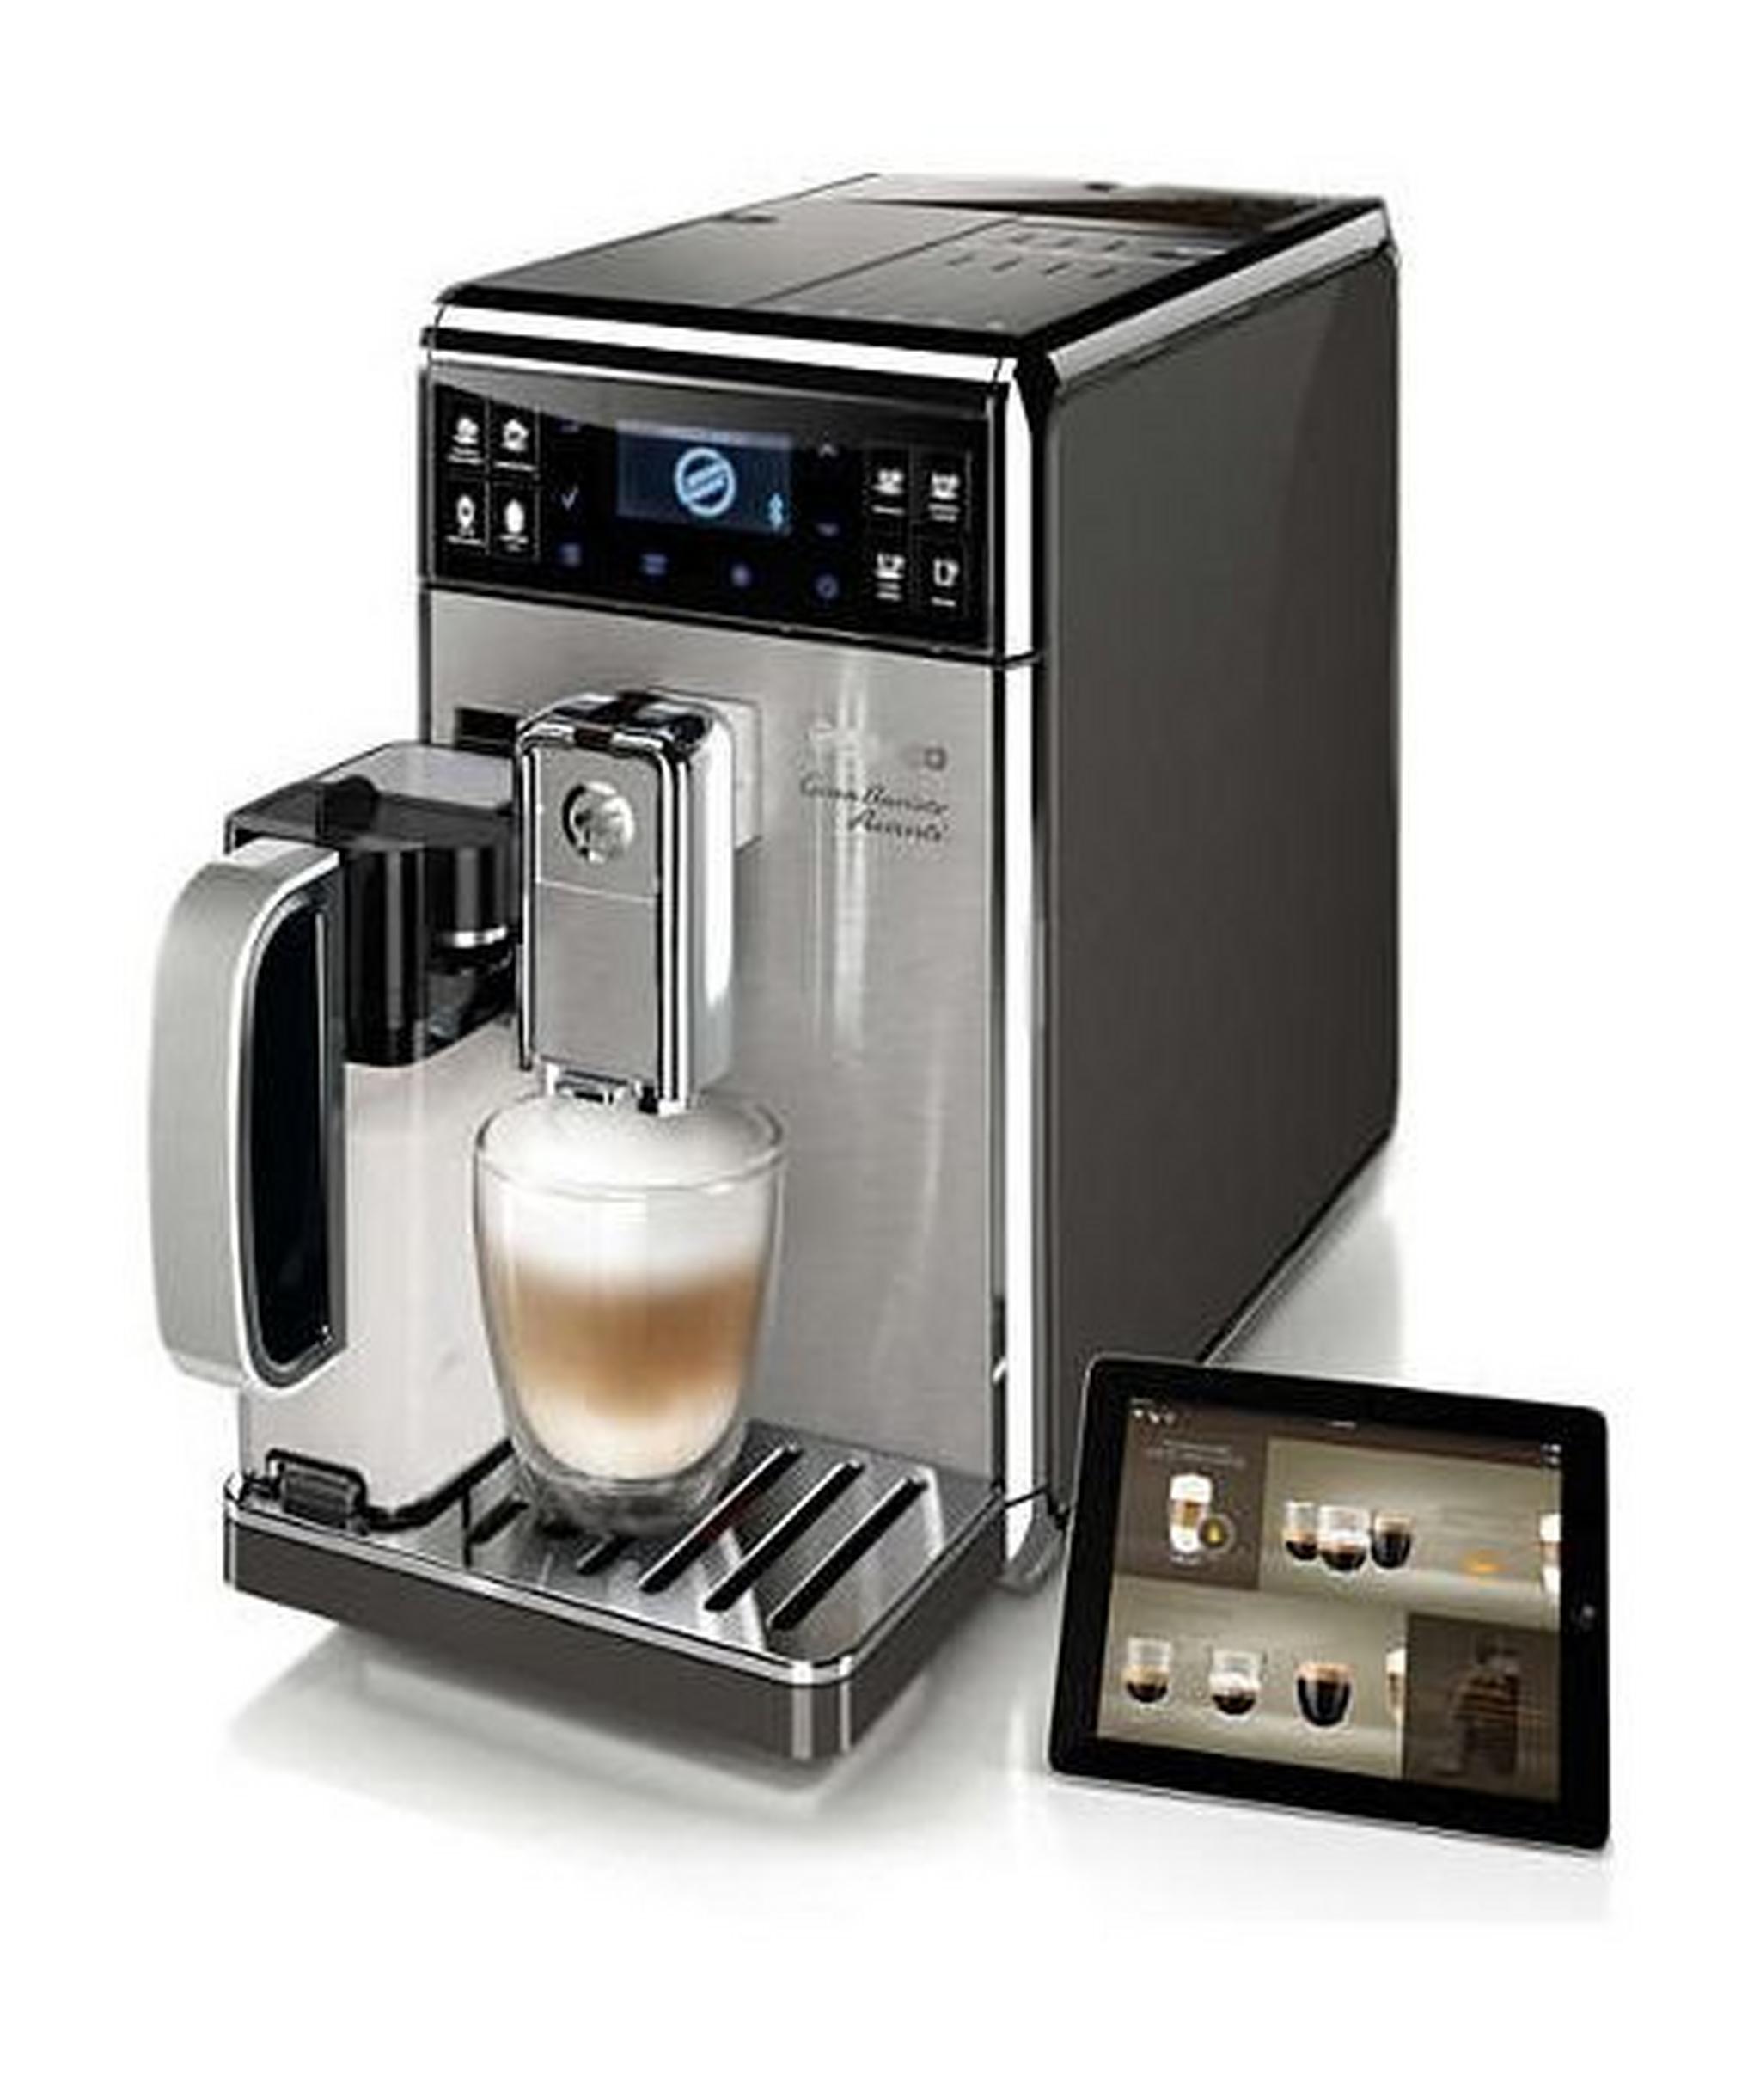 ماكينة تحضير القهوة فيليبس سيكو غرانباريستو أفانتي الأتوماتيكية بامتياز – أسود / فضي (HD8977/01)